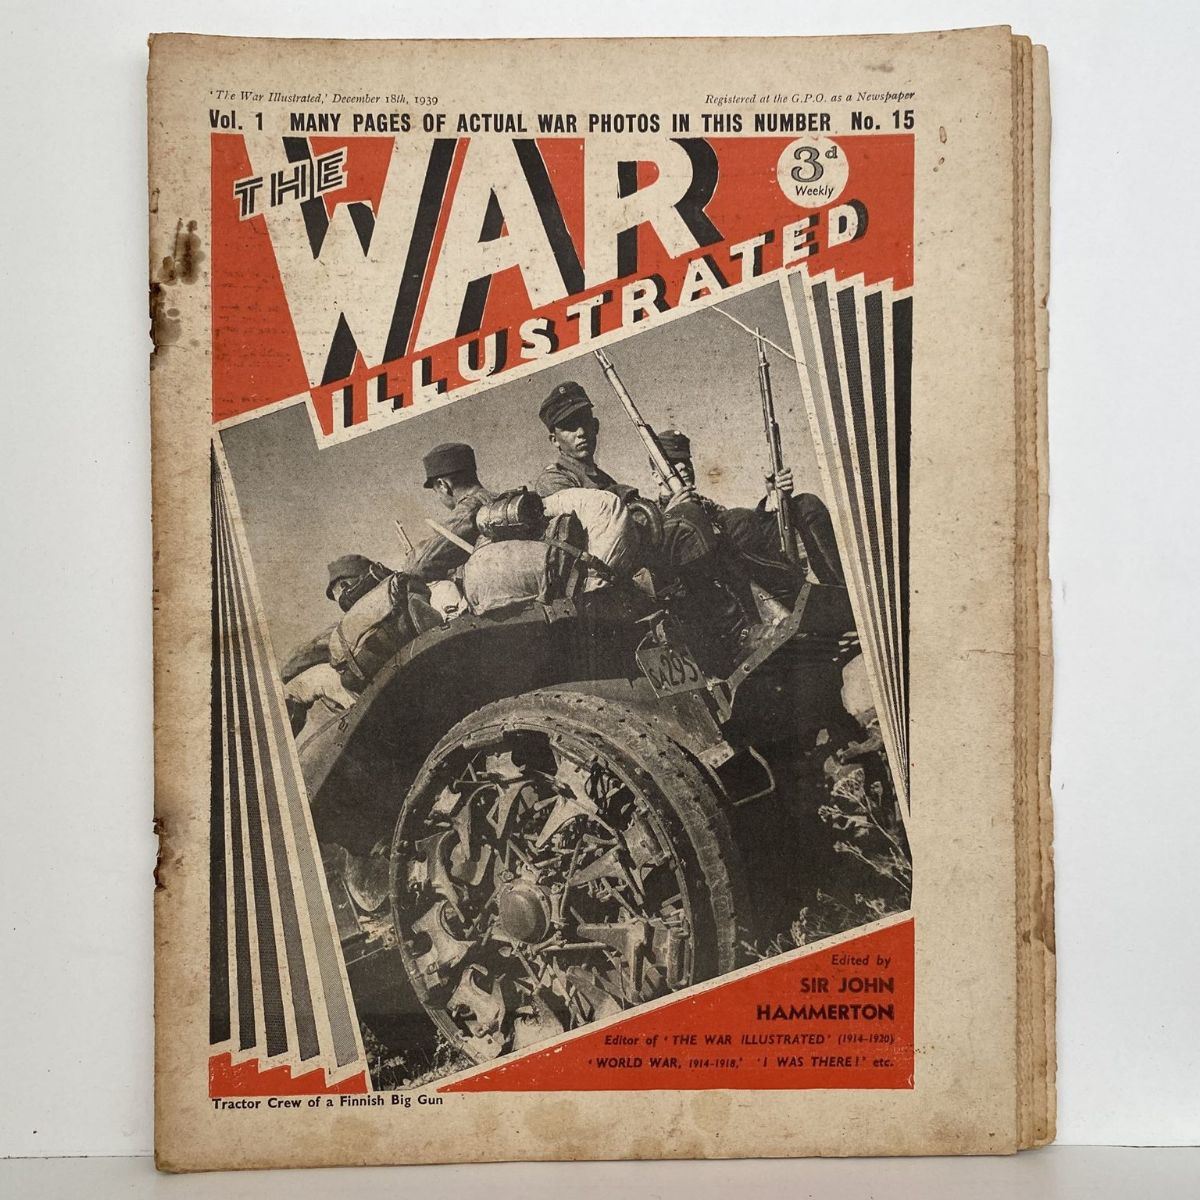 THE WAR ILLUSTRATED - Vol 1, No 15, 18th Dec 1939